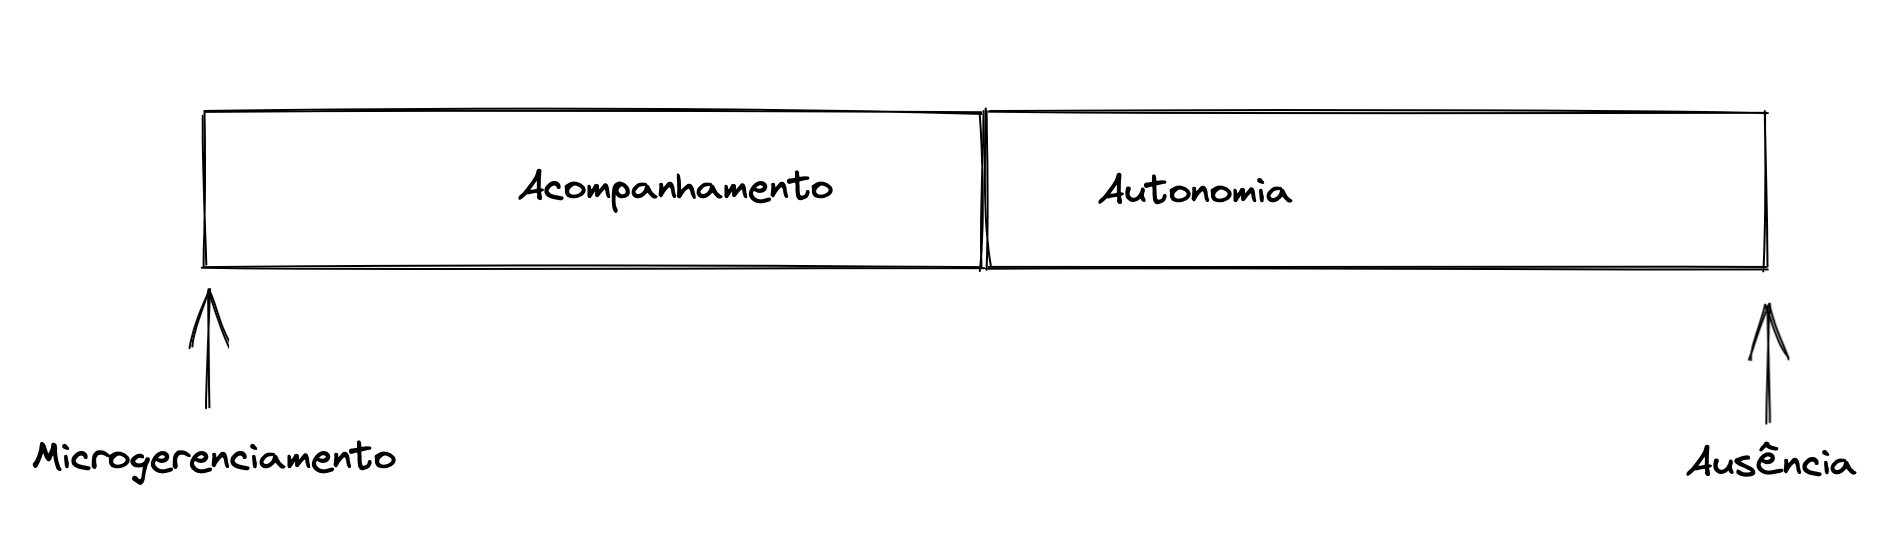 acompanhamento_autonomia